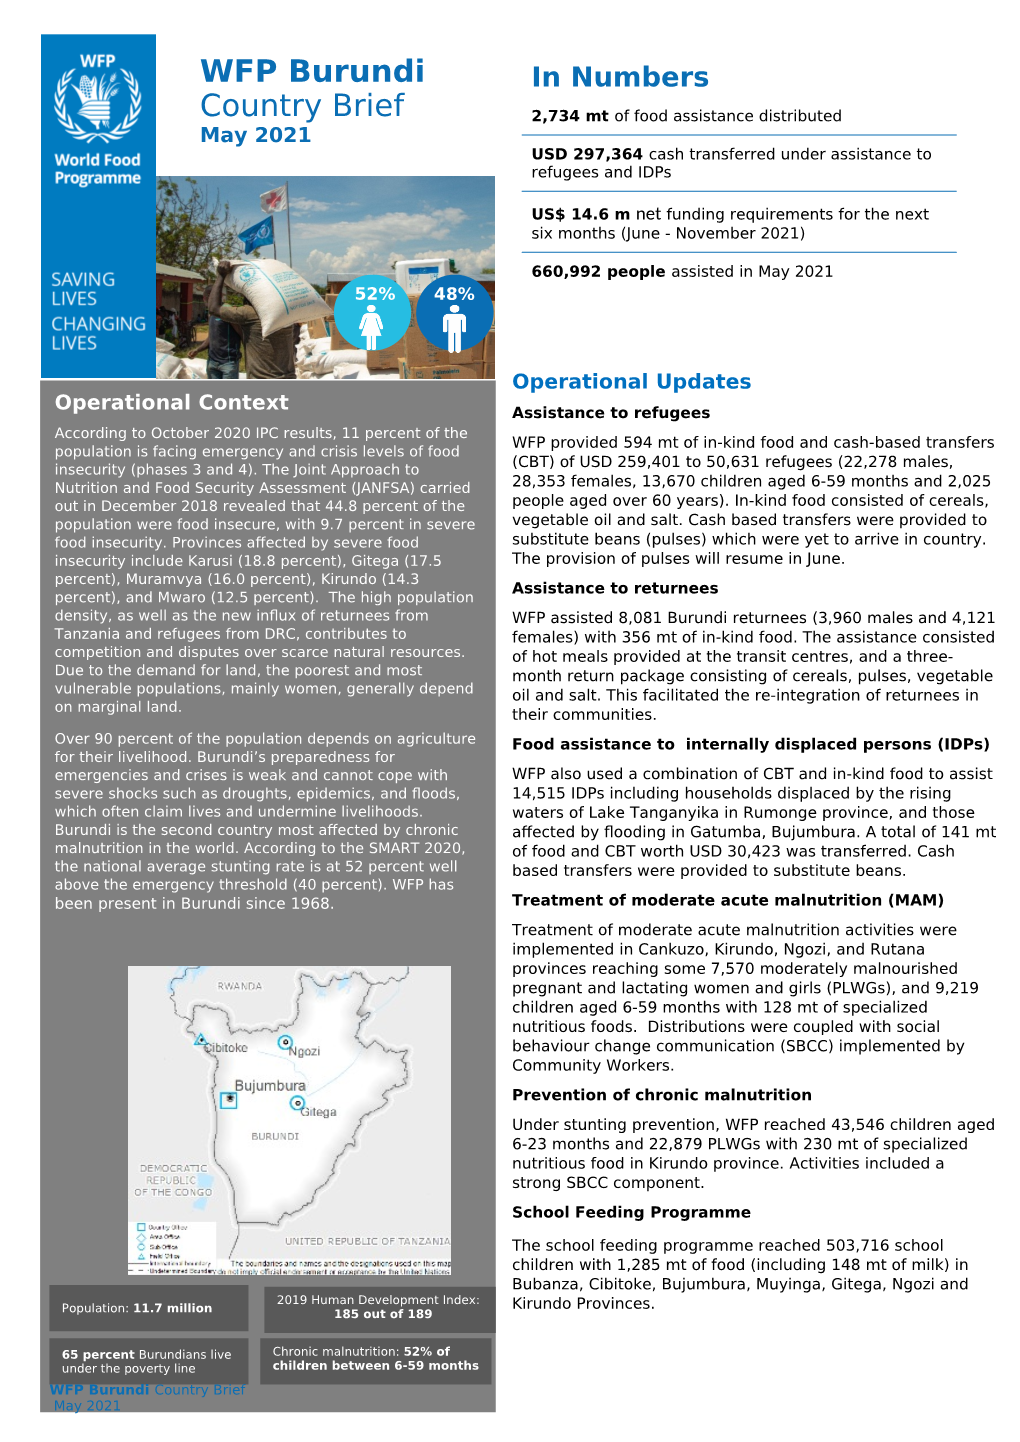 WFP Burundi Country Brief